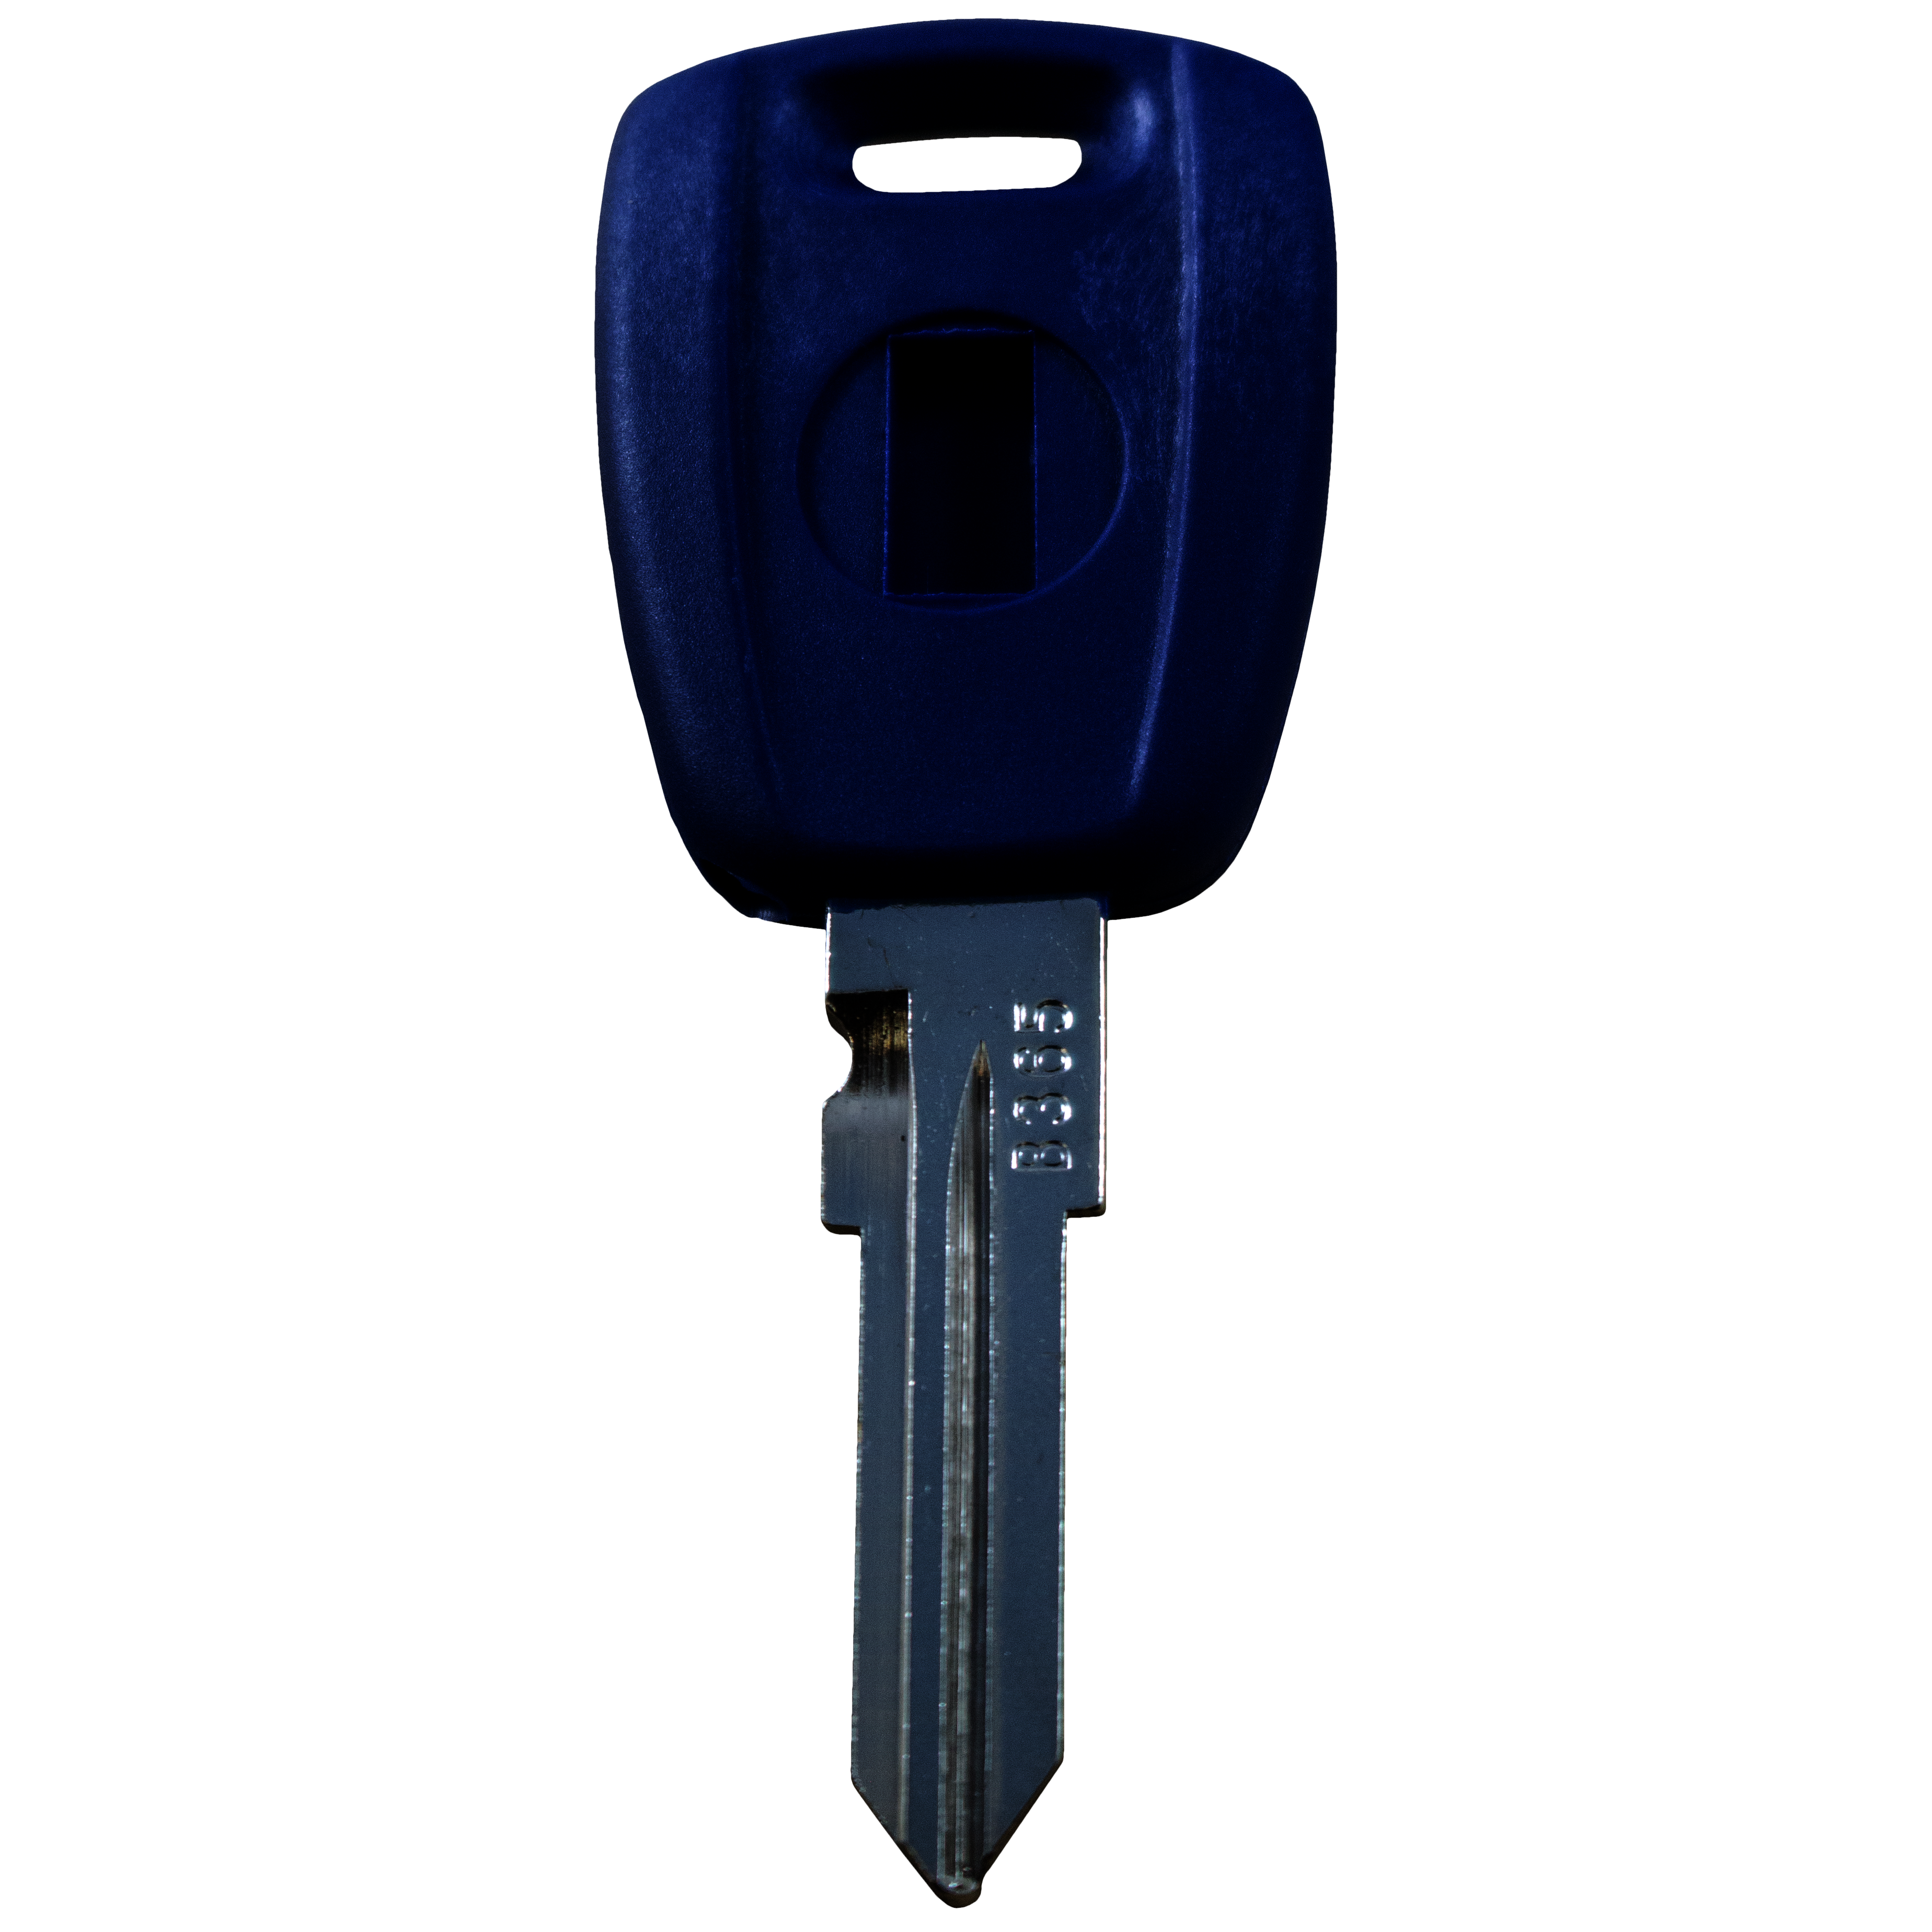 Schlüssel für FIAT ohne Transponder (GT15 Profil) 